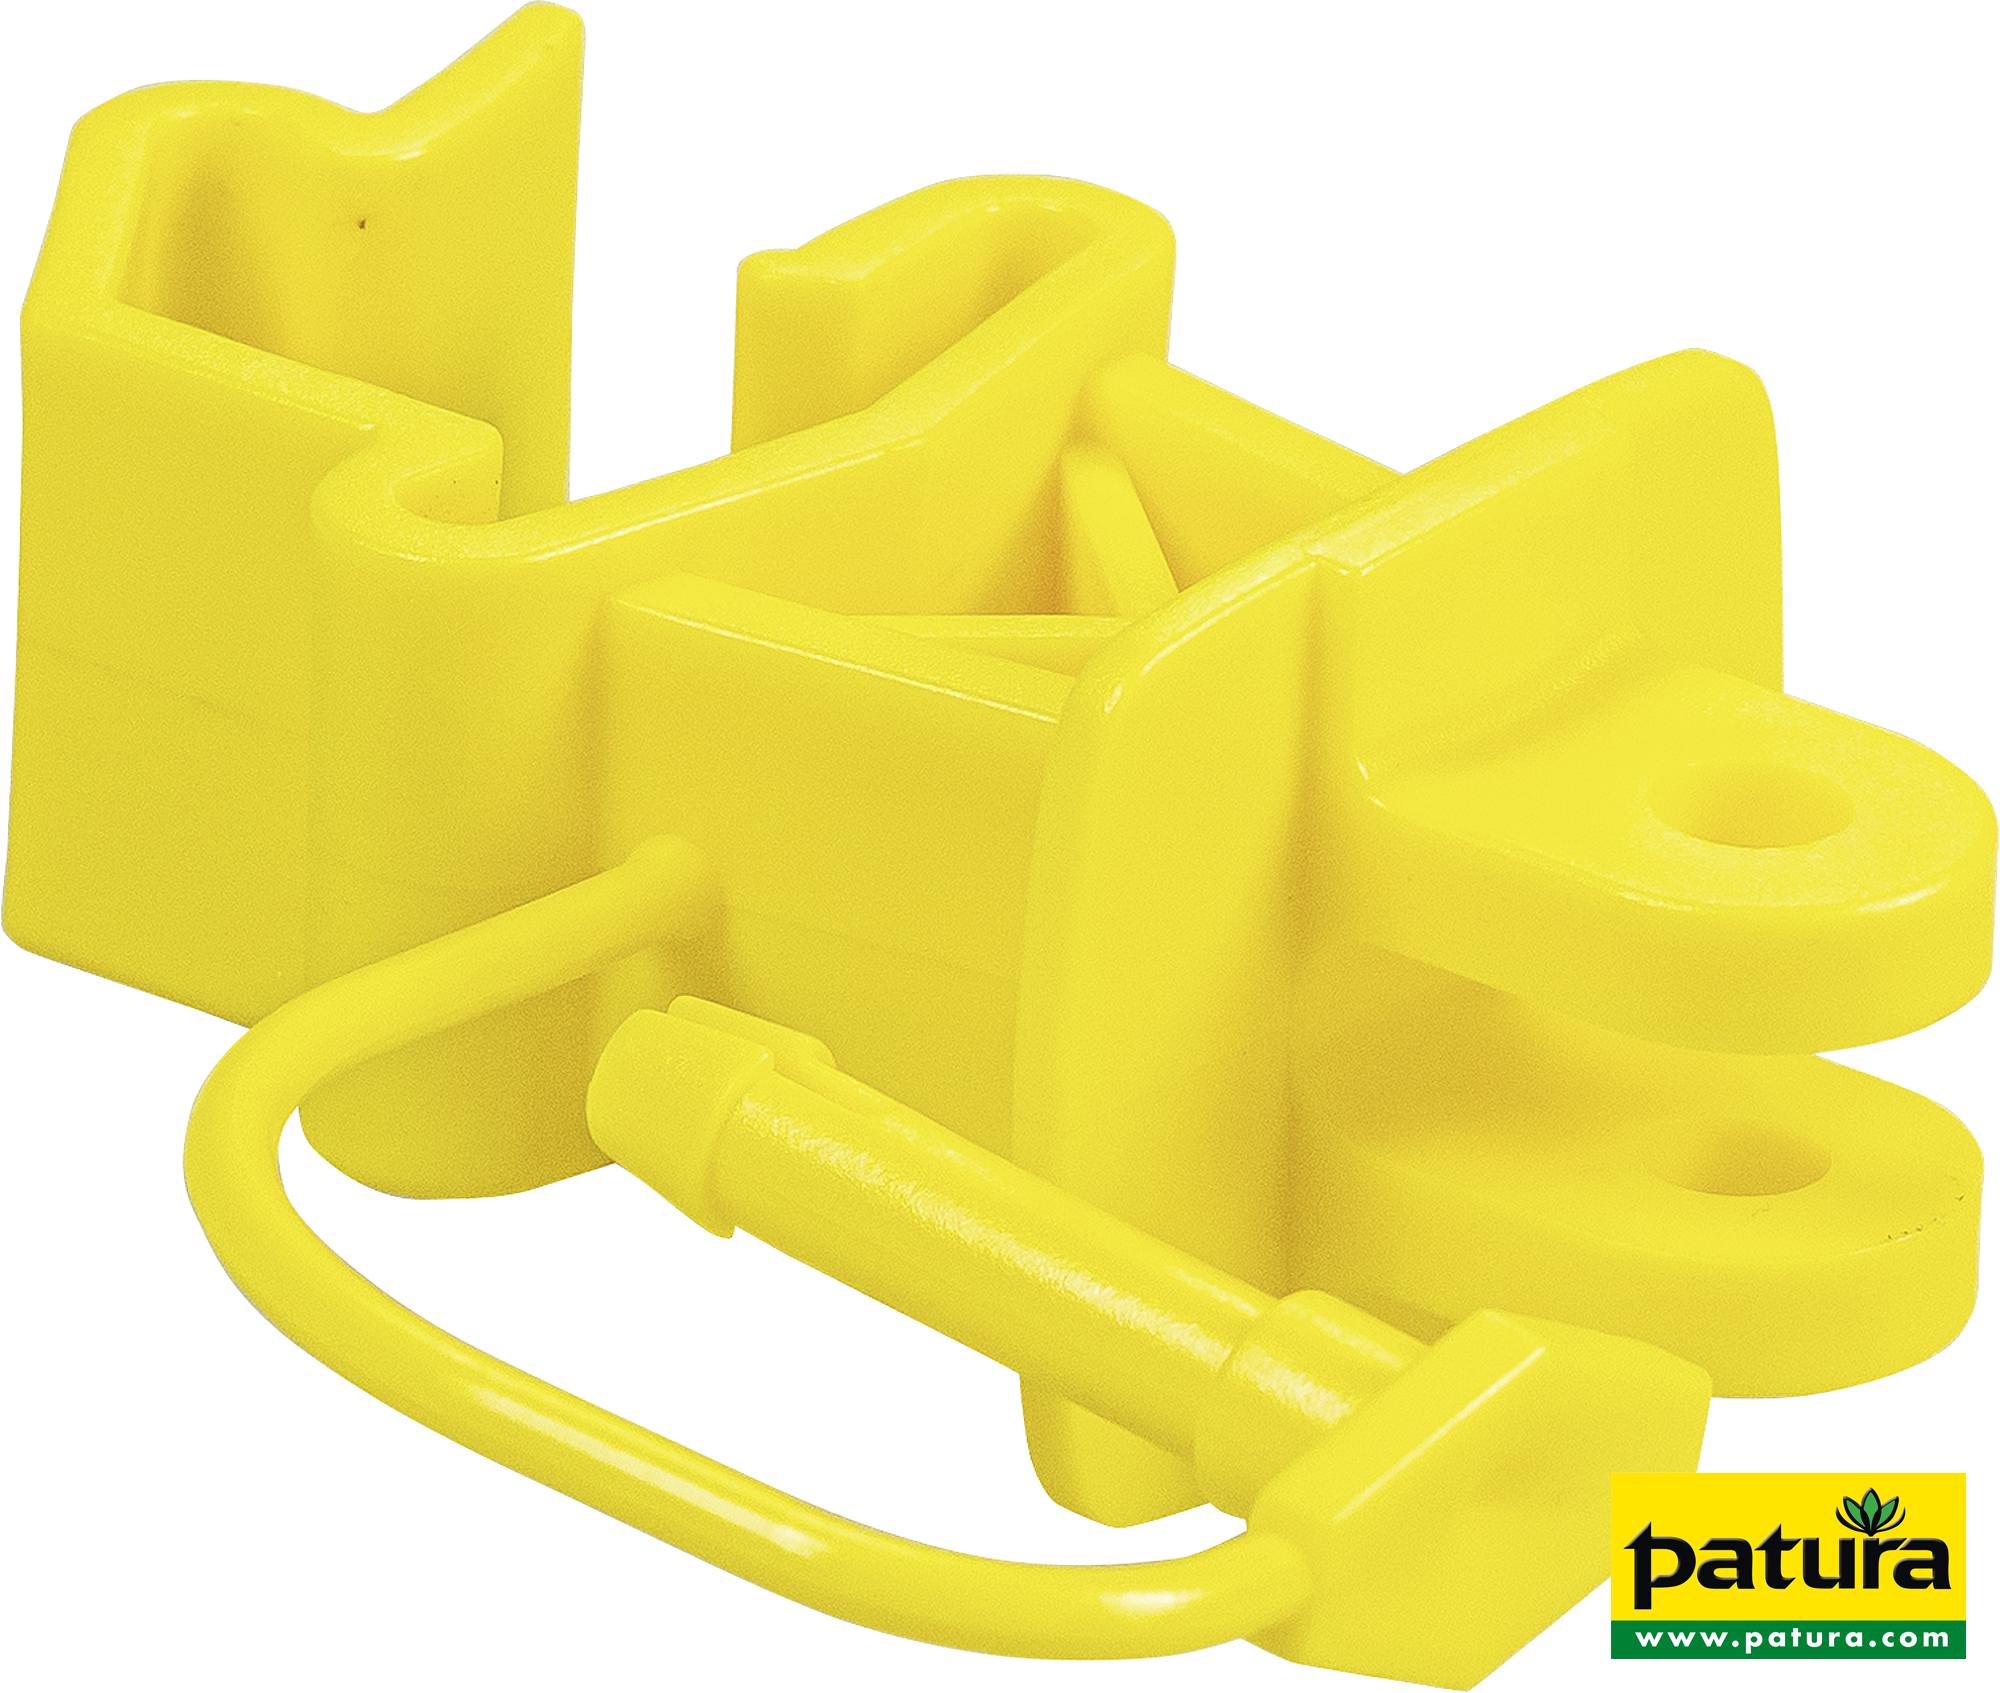 Standard-Isolator mit Stift, gelb, für T-Pfosten (25 Stück / Pack)